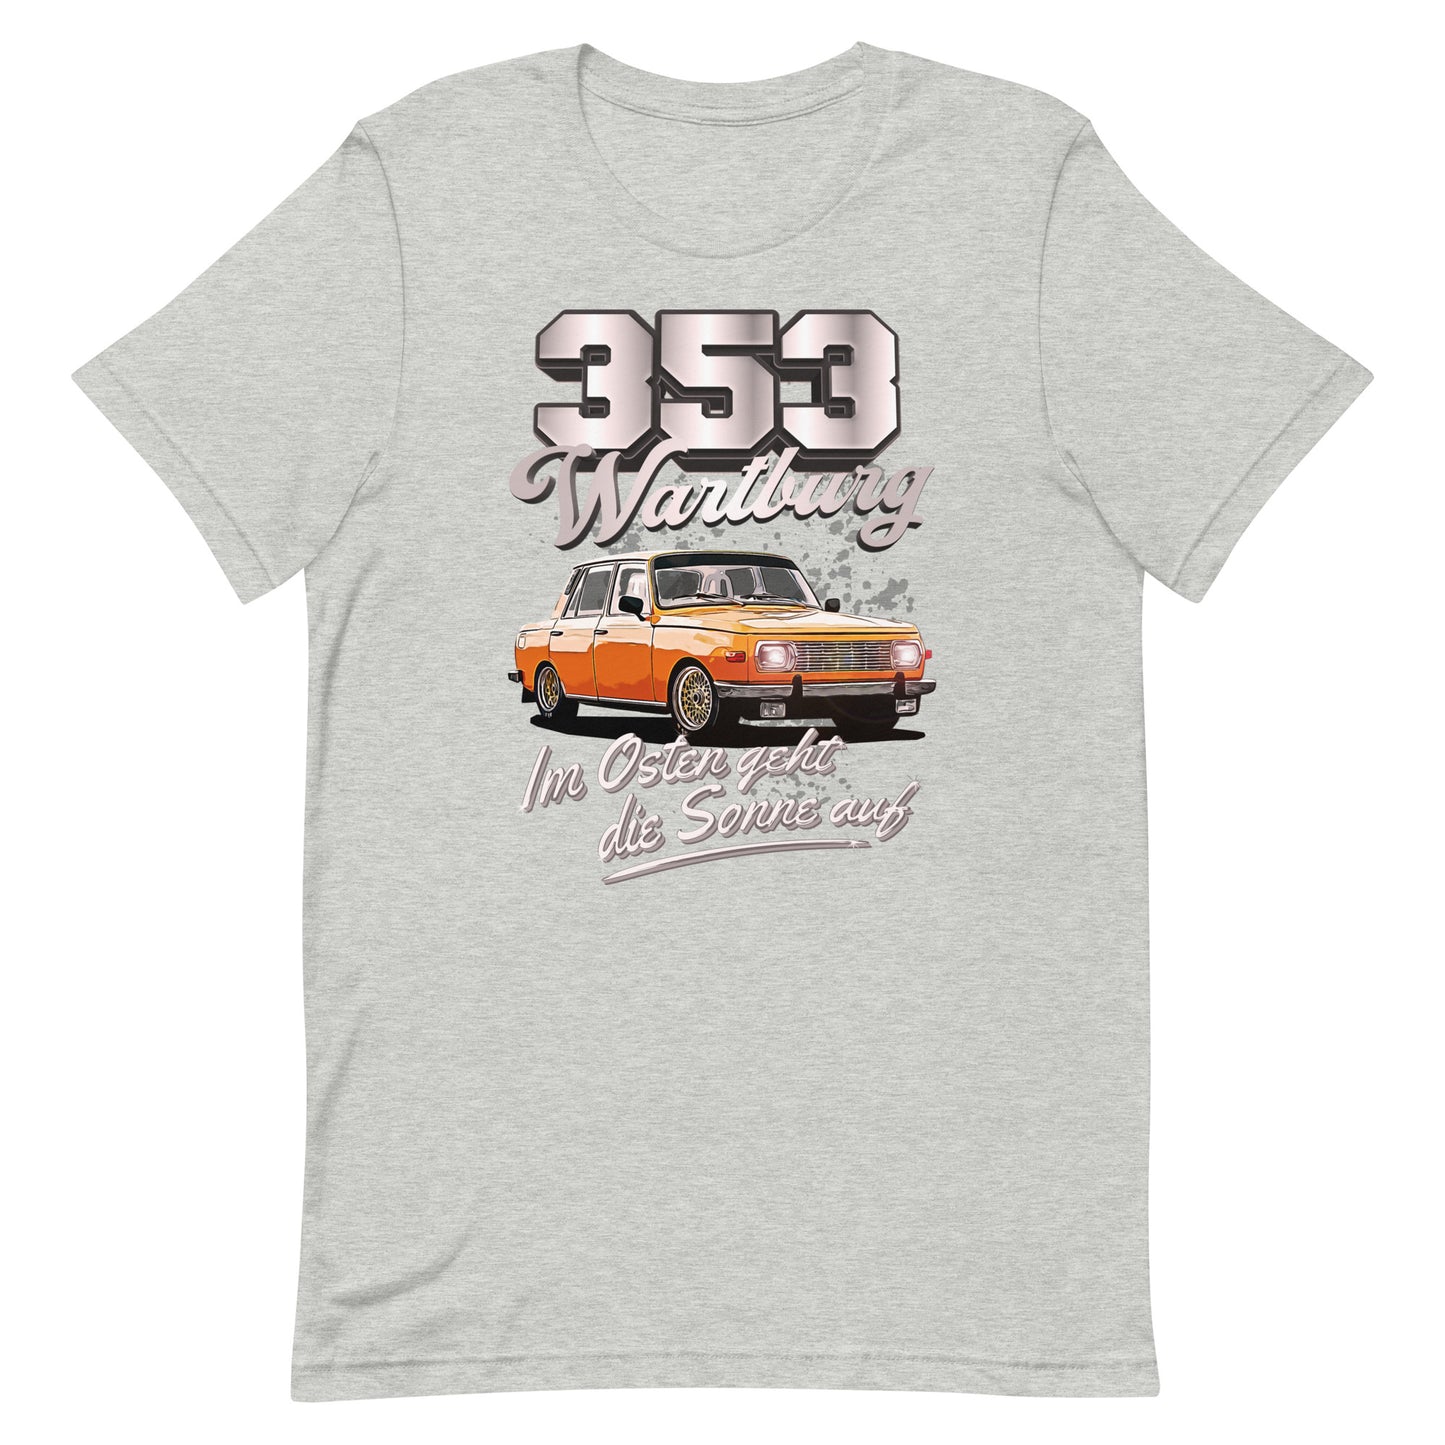 Wartburg 353 Tuning - Unisex T-Shirt